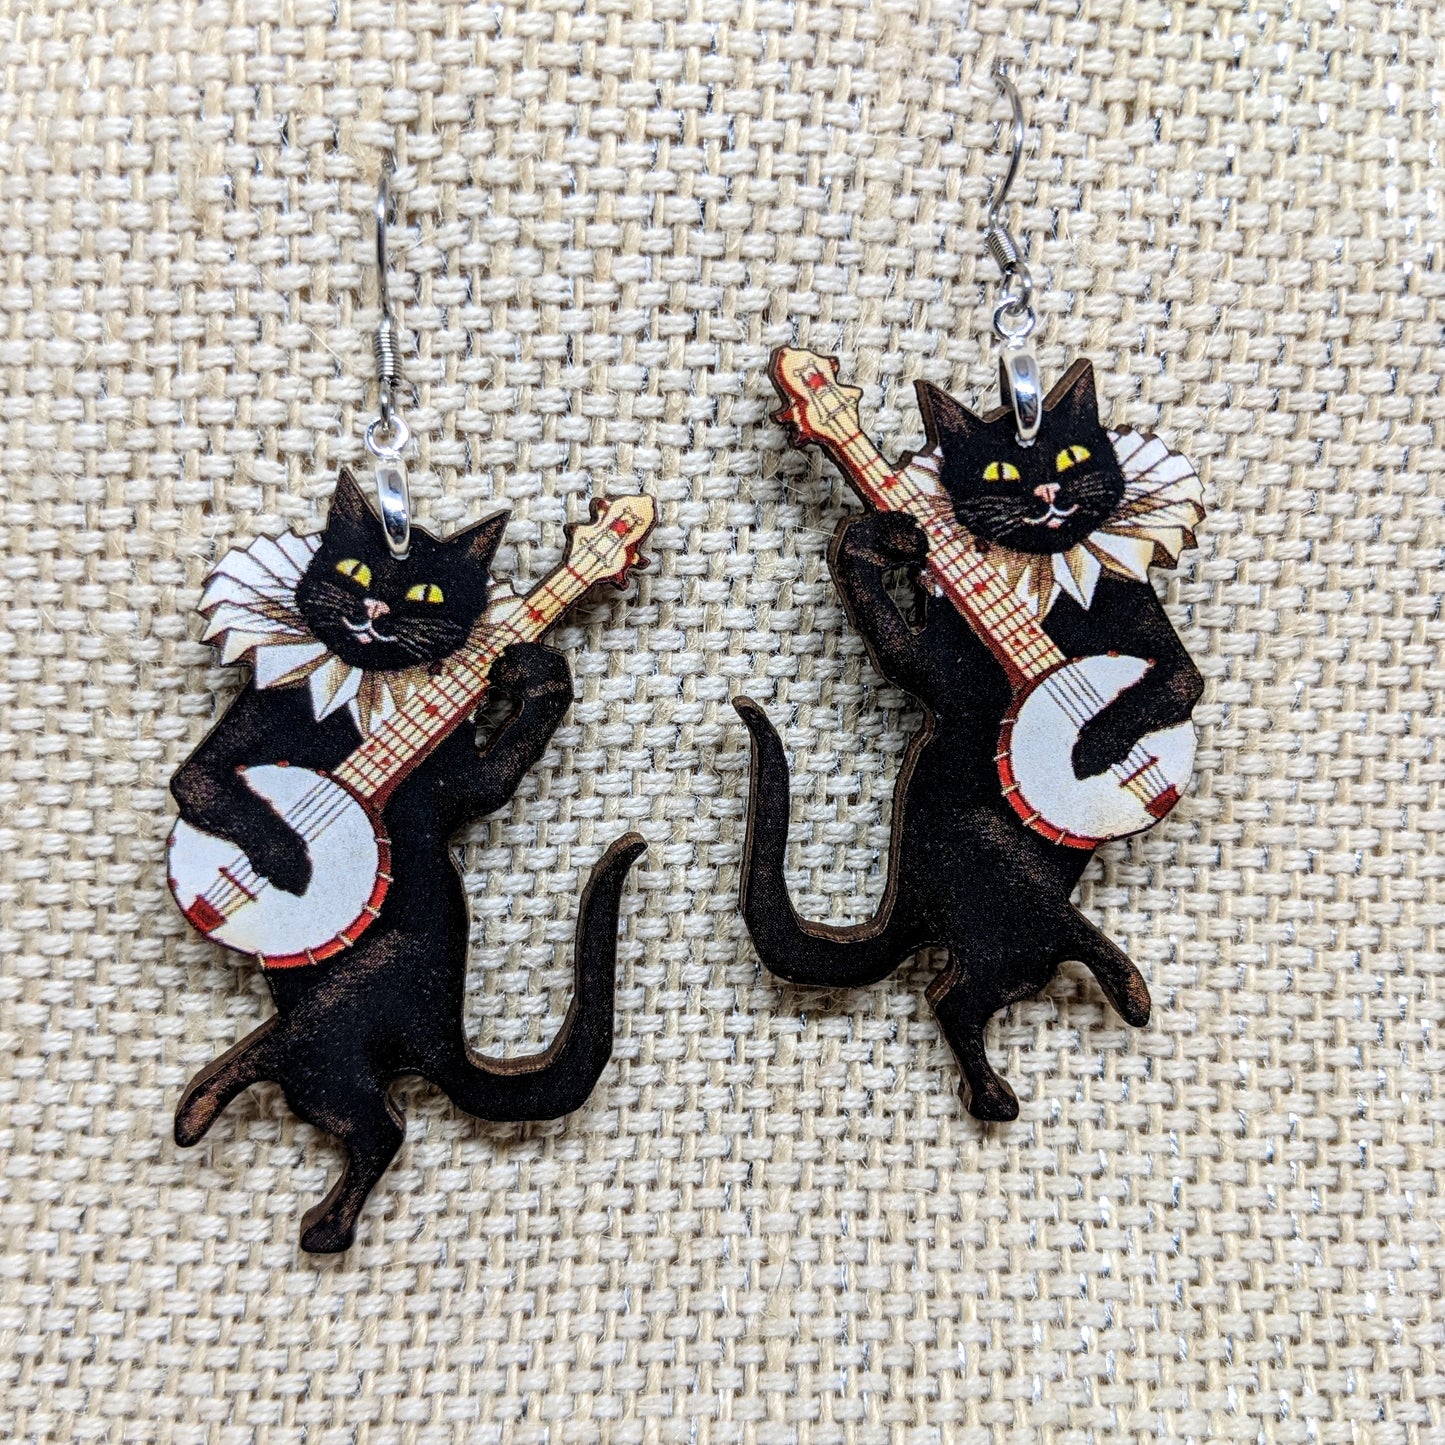 Banjo Cat Earrings Black Cat Laser Cut Wood Single Sided Earrings